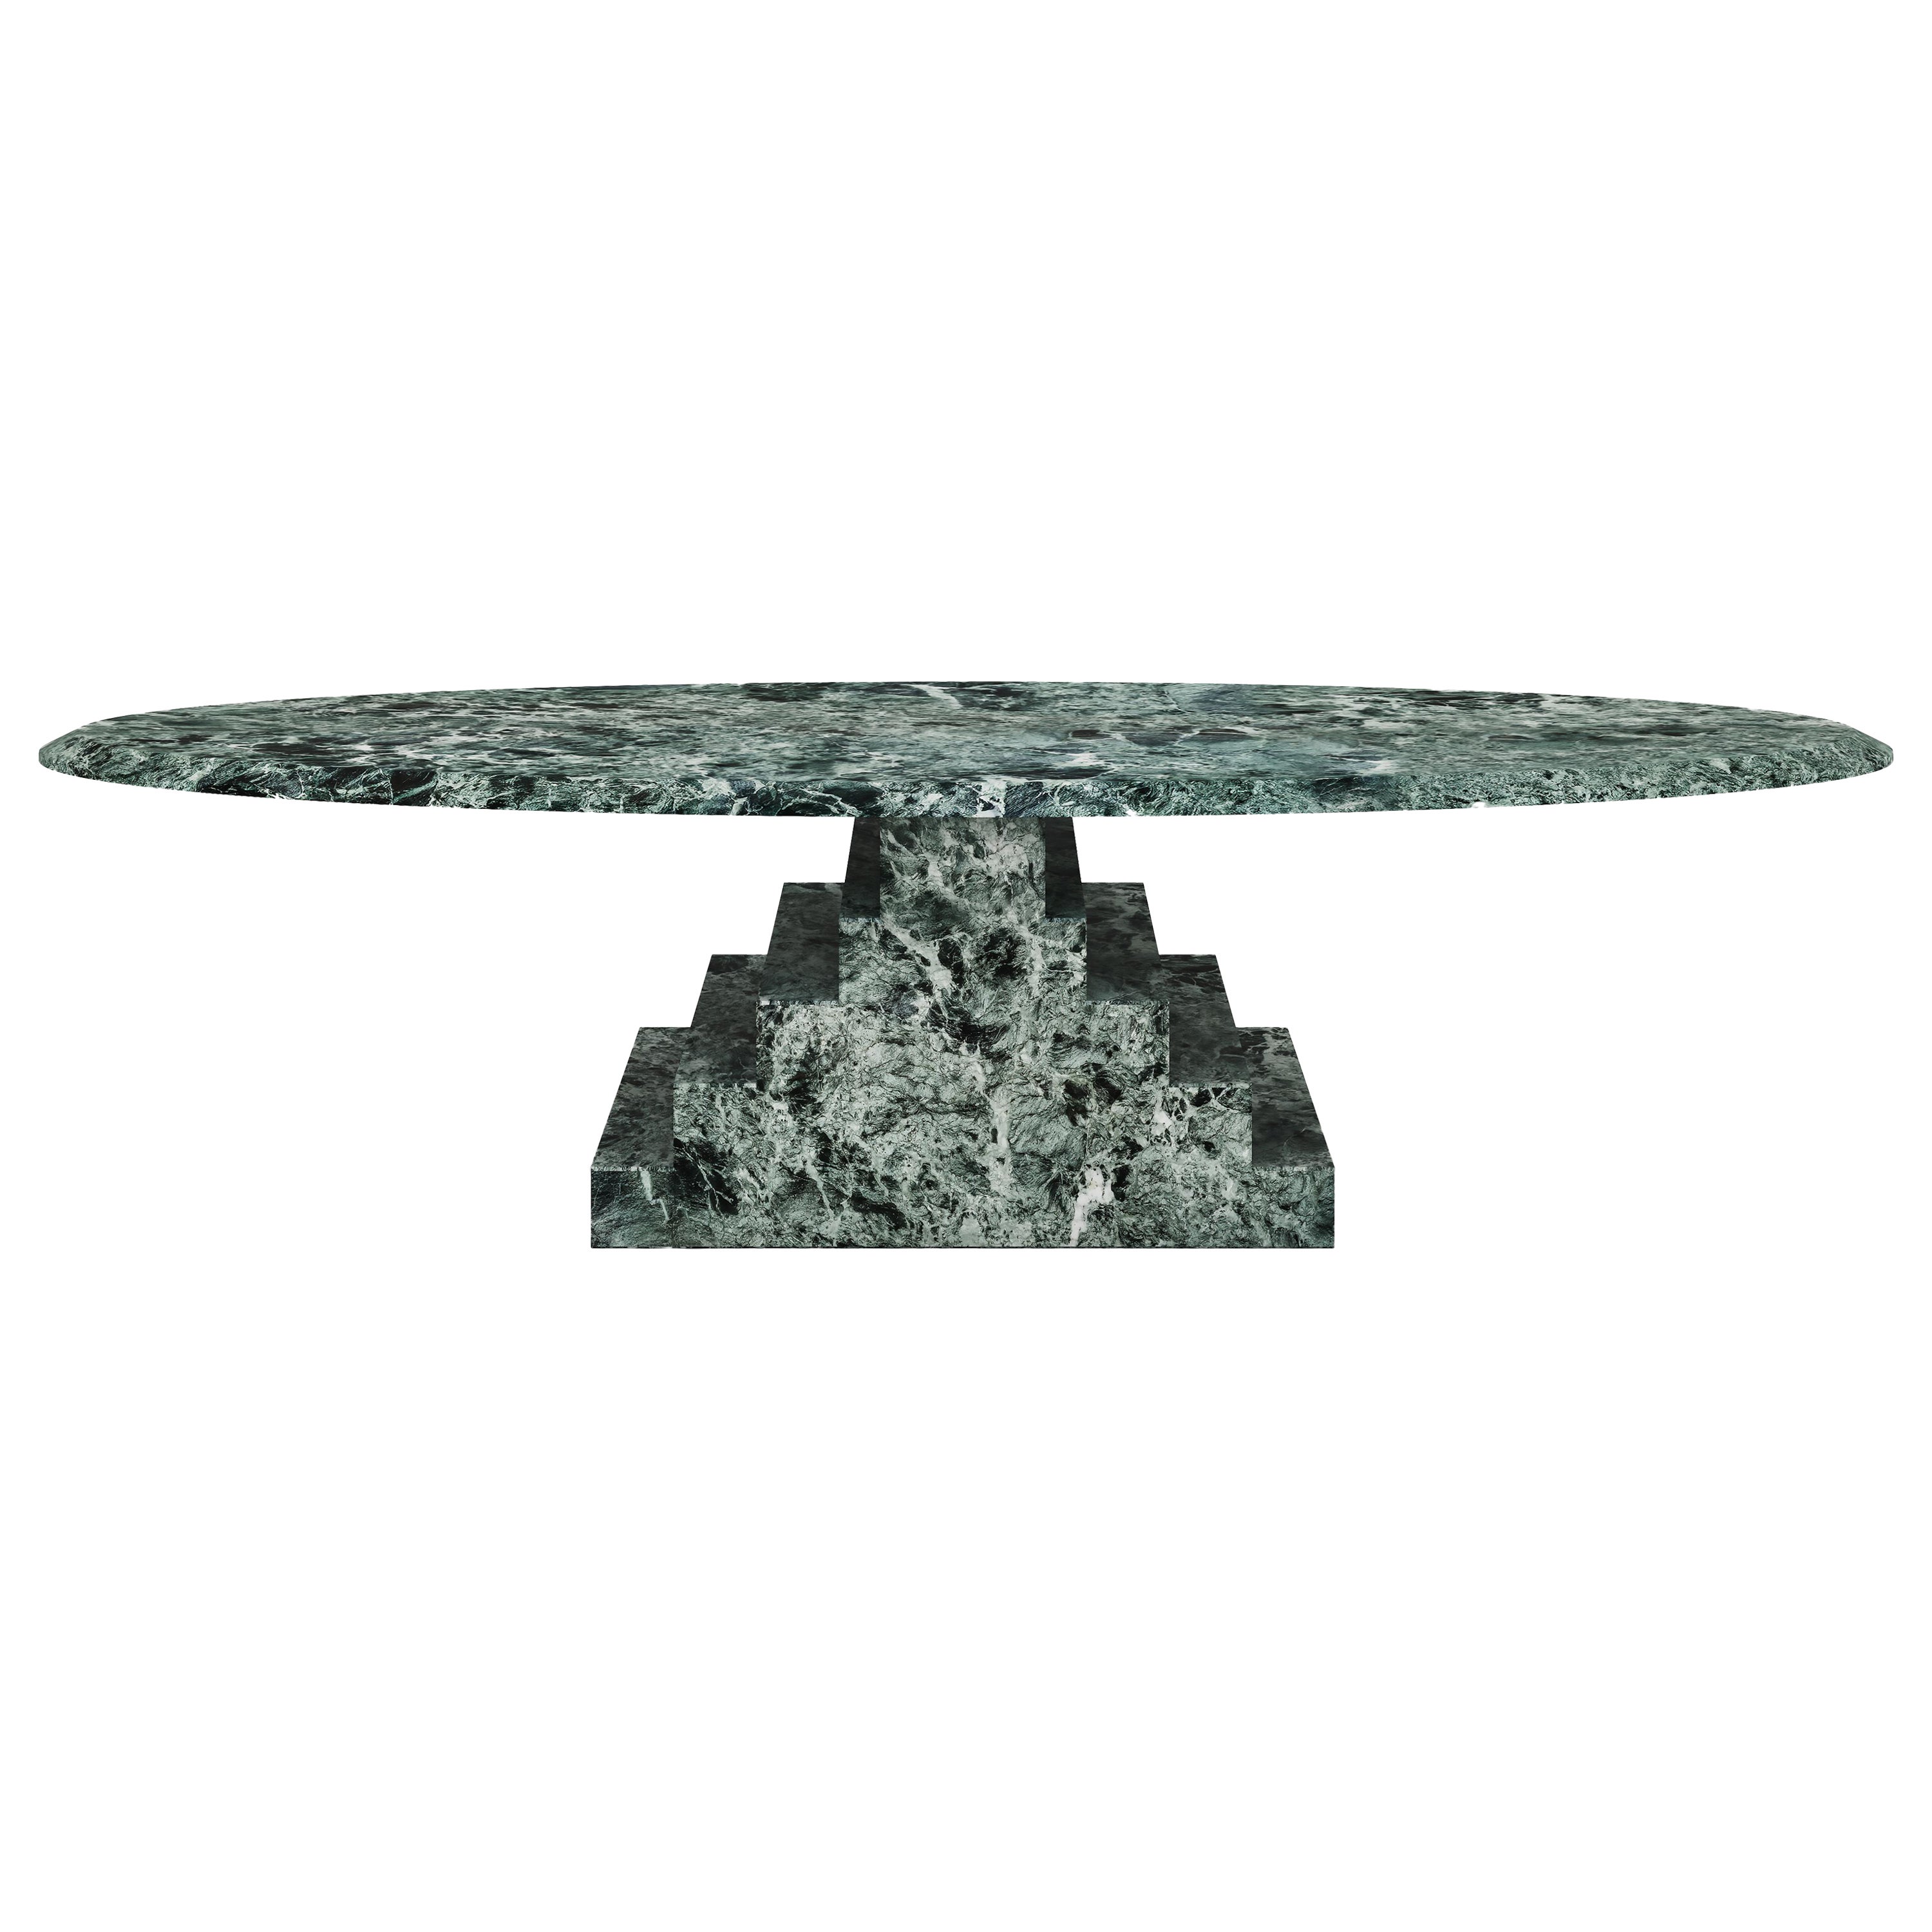 NORDST NIKO Couchtisch, italienischer grüner Marmor, dänisches modernes Design, neu